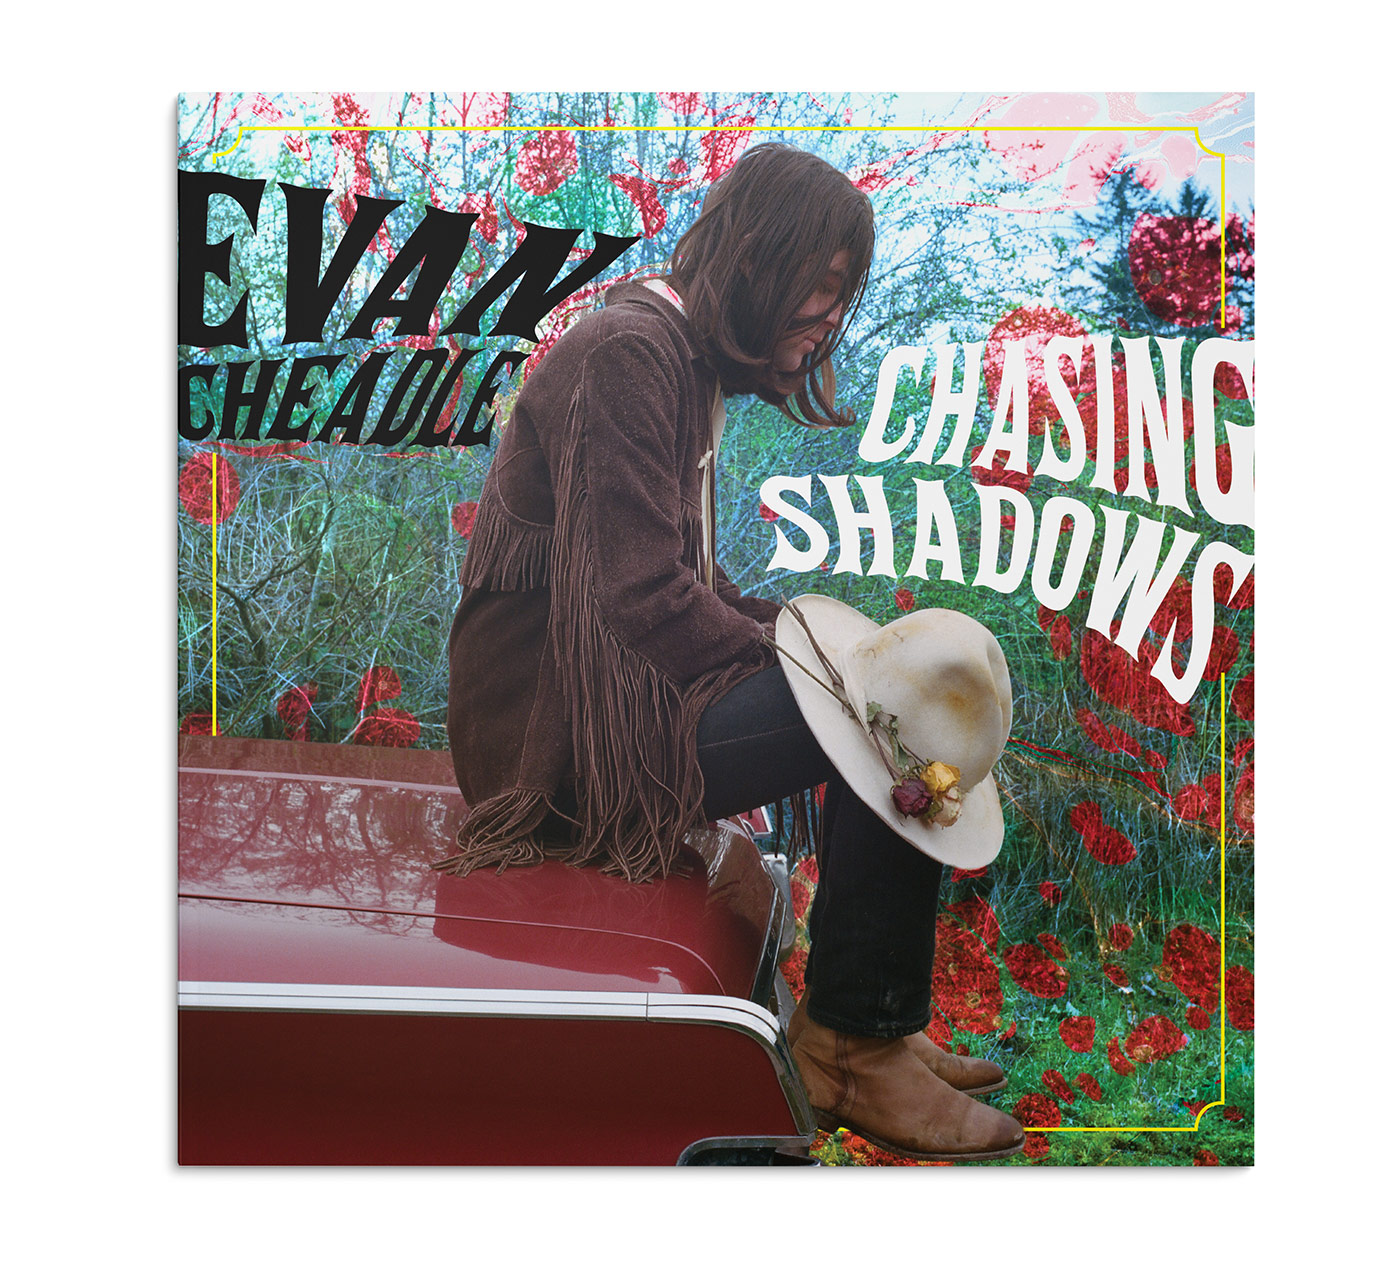 Evan Cheadle LP/Album cover design.